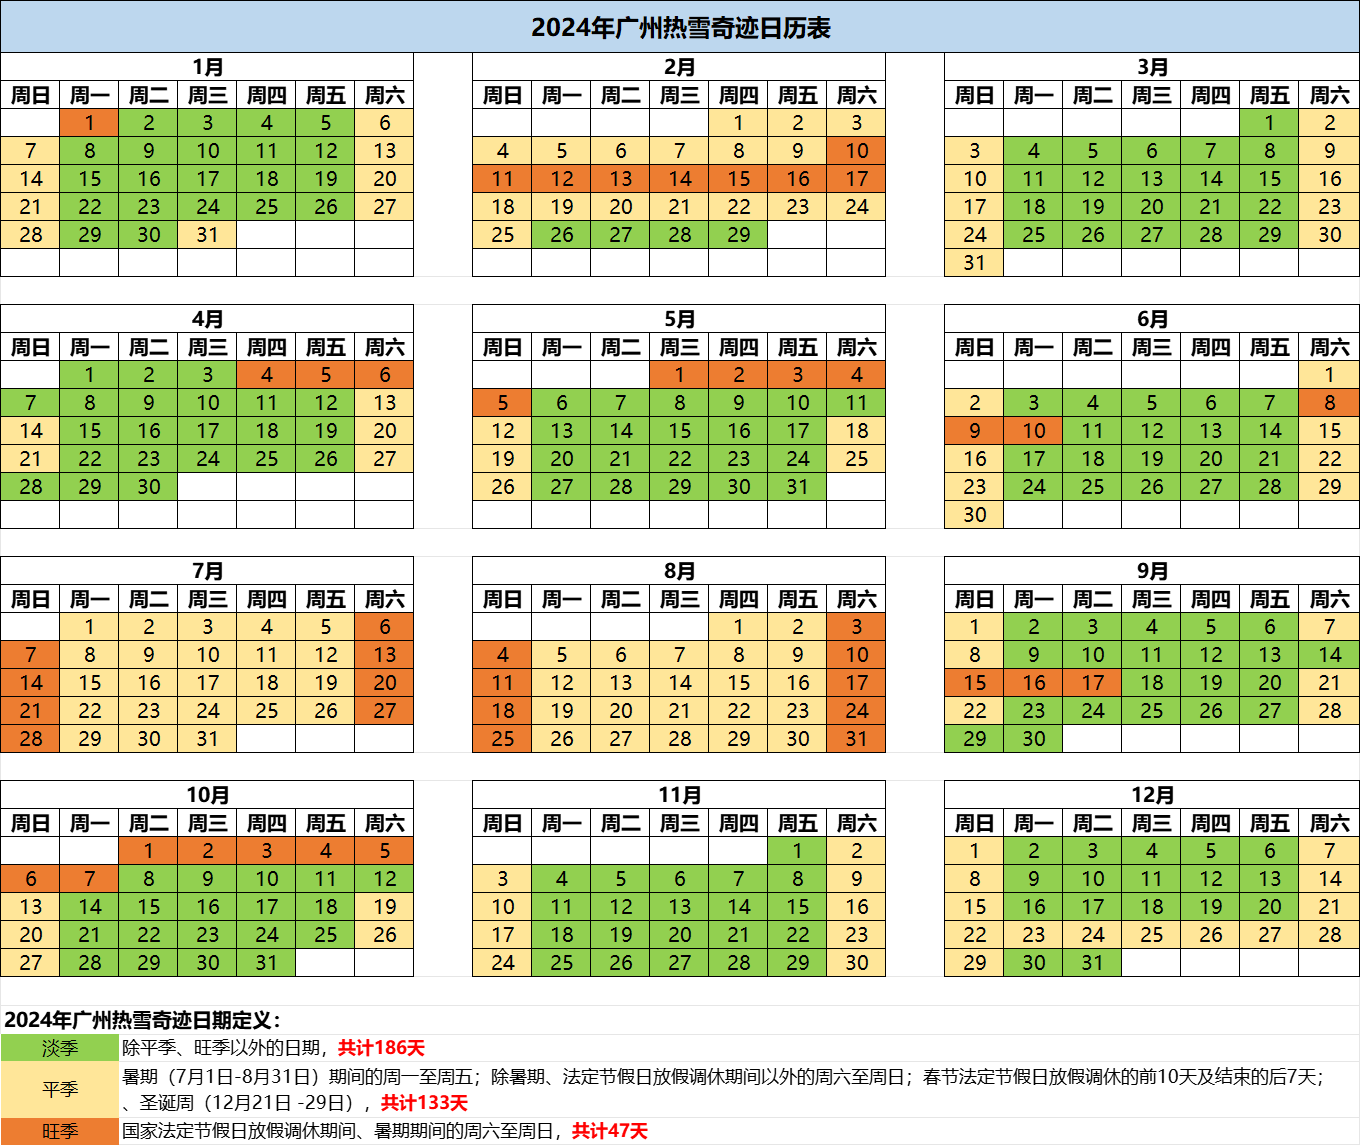 【女神特惠X周末票】广州热雪奇迹-4小时滑雪+娱雪通玩女士特权票丨适用日期3.1-3.17